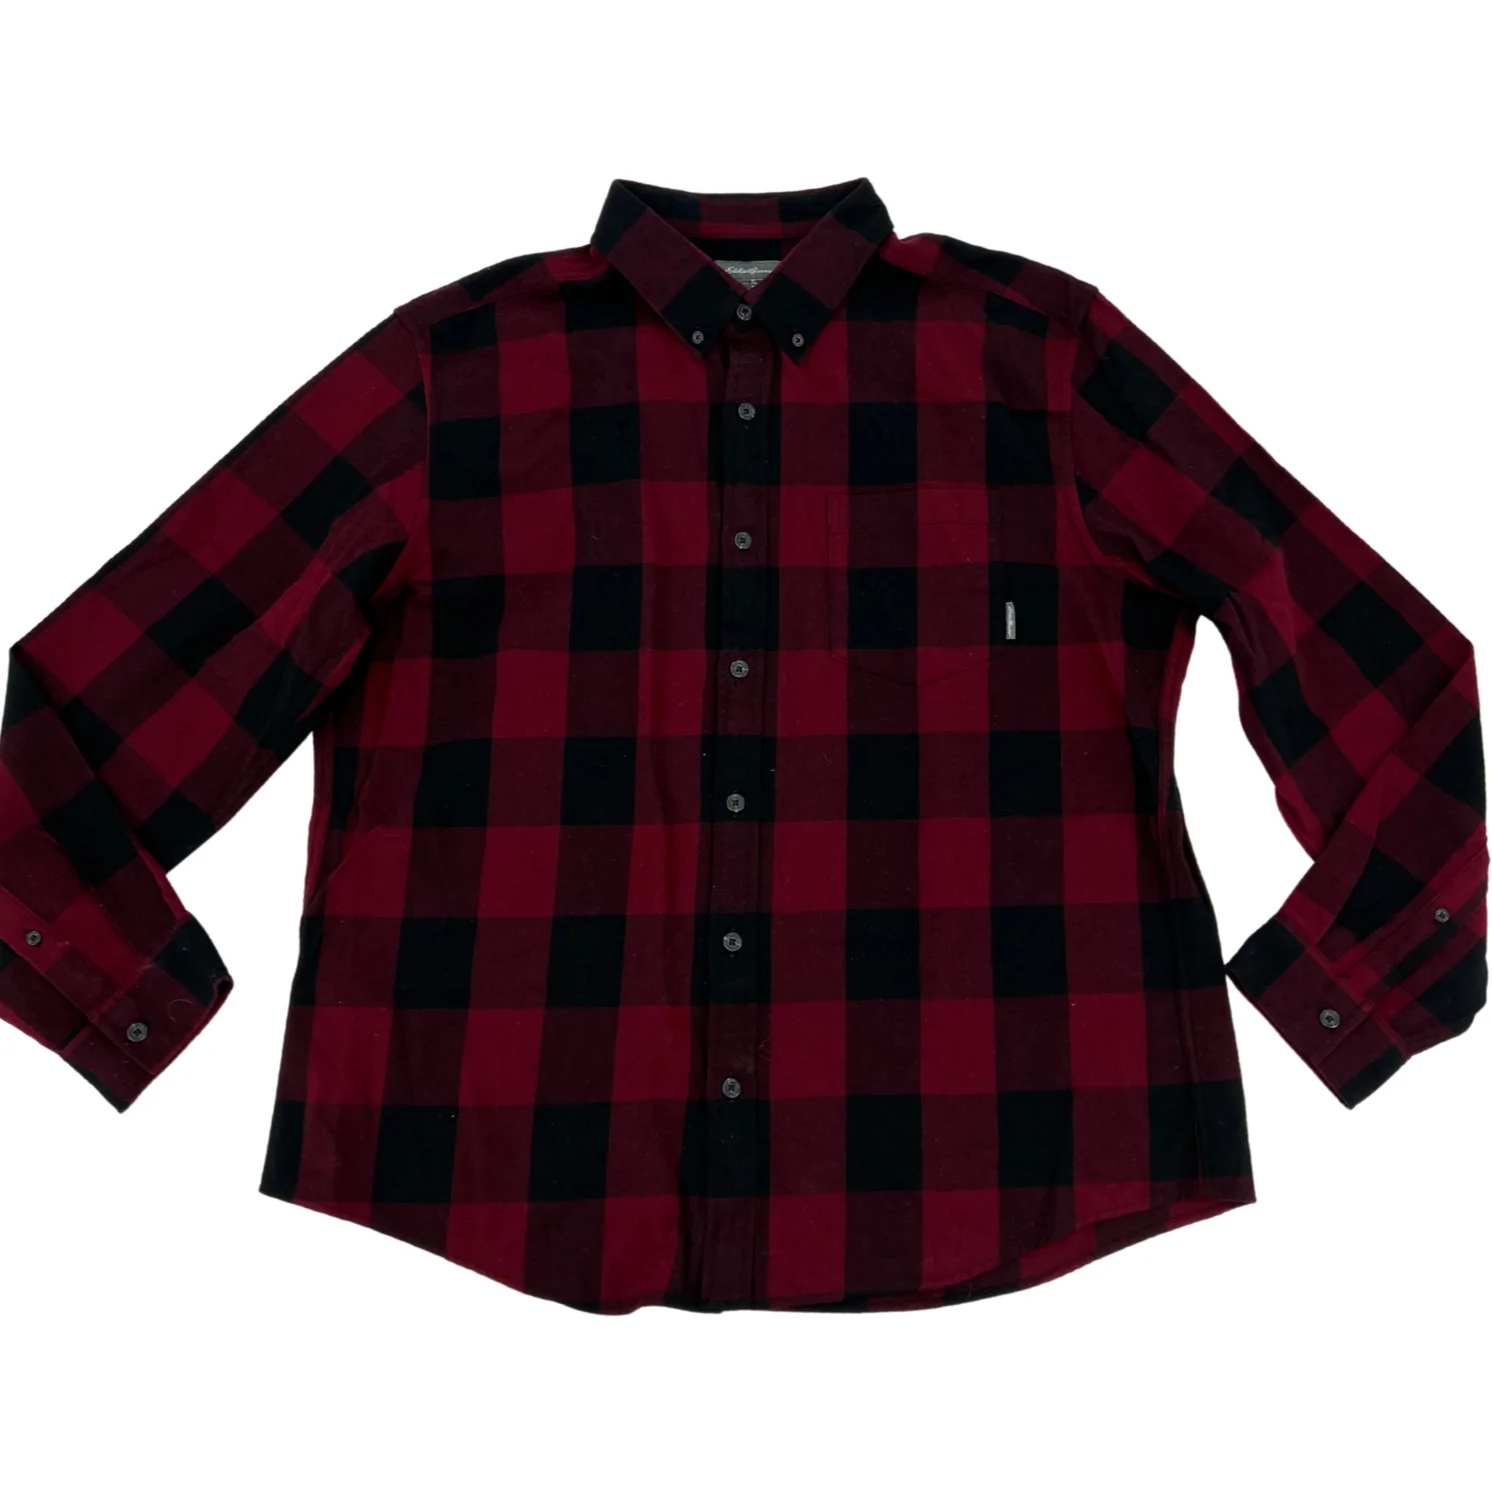 Eddie Bauer Men's Flannel Shirt: Red & Black Plaid / Size XLarge